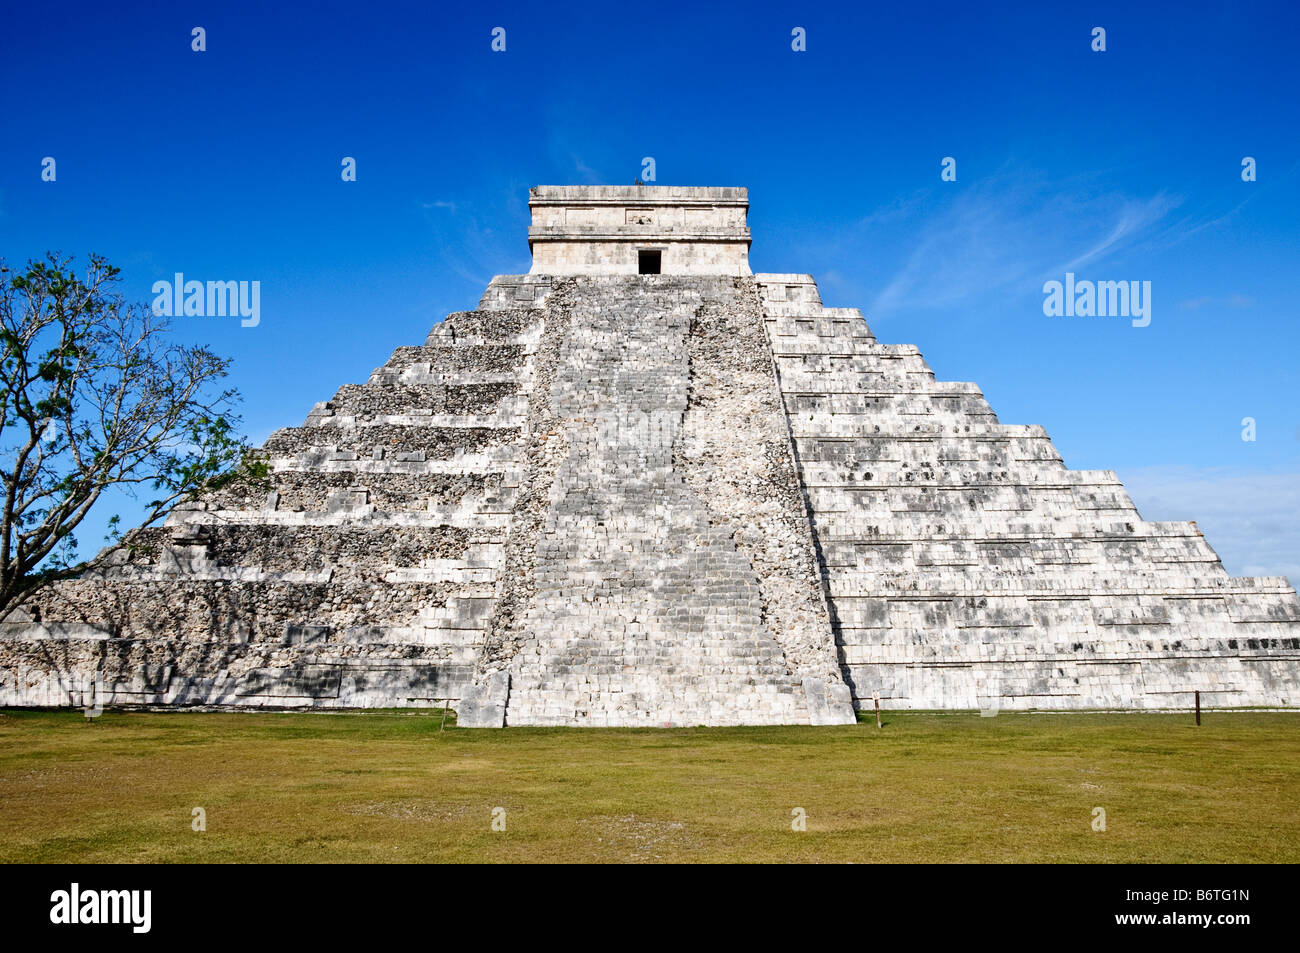 CHICHEN ITZA, Mexique - El Castillo (également connu sous le nom de Temple d'Kuklcan) à l'ancienne ruines mayas de Chichen Itza, Yucatan, Mexique 081216092500 4396.NEF Banque D'Images